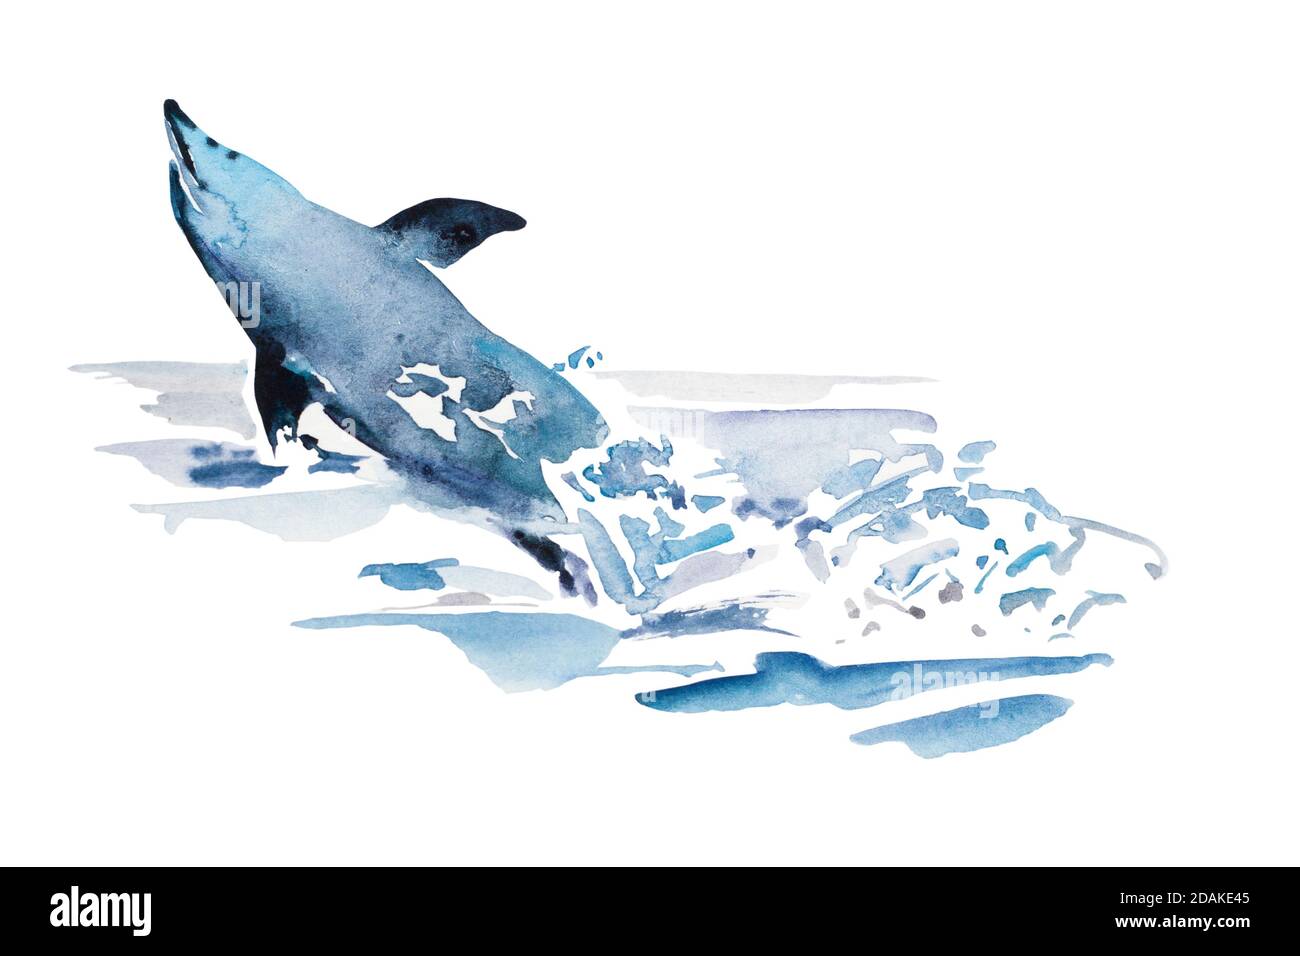 PLAYFULL aquarelle bleu dauphin saut de l'eau dans l'éclaboussure de mousse. Illustration originale de l'animal marin, isolée sur fond blanc Banque D'Images